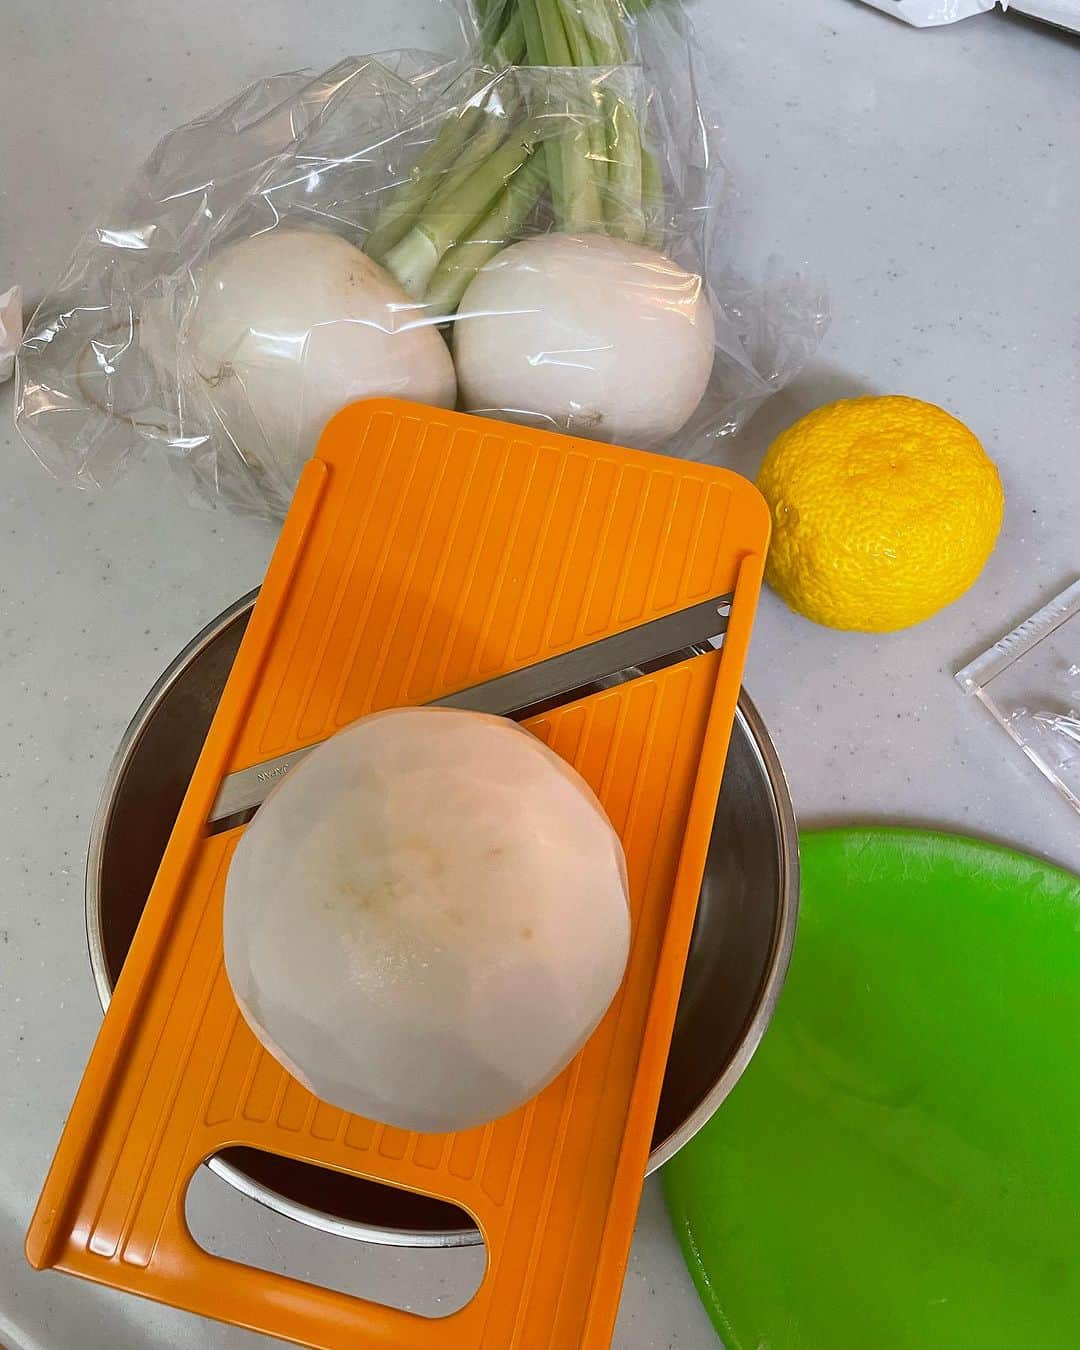 飯島直子さんのインスタグラム写真 - (飯島直子Instagram)「こんばんは^ - ^♪  今日は天気よく、洗濯物がよく乾きましたね  わたしは洗濯してませんが、きっとそんなことだろうと思い、外を眺めていました^_^  おやつにイモを蒸しました  夕方に義兄から新たなソーラーランプの土産が届いたのでイモと物々交換しましたよ^ - ^  また楽しみが増えました  姉は買い物へ行ったきり、その後はなんの連絡もありません、変に気になって仕方ありませんでした  ツンデレですね^_^  12.13日のへんじすこしです＾＾  miho55才誕生日おめでとう♪膵臓ガンの大手術… がんばったね…今週退院、無事終わり本当によかった(*´-`)ダブルでおめでとうだね^_^ゆっくりと体調戻していってね、そして美味しいものたくさん食べてキレイなものいっぱい見て元気になってね 来年の夏も暑いよ！カラダに気をつけてステキな一年になりますように！  直子50才誕生日おめでとう♪一緒だね^ - ^ 五十代いらっしゃい♪体調はどう？色々変化ある年頃だからカラダに気をつけてね^_^ステキな一年になりますように♪  sh_in50才誕生日おめでとう♪体調大丈夫^ - ^？ ムリせずゆっくりやればいいよ^_^カラダに気をつけてね！健康に気をつけステキな一年にしてね♪  カワハラ秀さん59才誕生日&入籍おめでとう♪ ダブルハッピーだね♡ステキな誕生日だ^ - ^ これからも健康に気をつけ夫婦仲良くお幸せに良い年を過ごしてね♪  人生初のホールインワン！おめでとう♪ すごいね^ - ^保険入ってた？！toshi♪  駐車場で当て逃げ！やさ男が…あ〜！すばらしい！ 優男に感動だね^ ^maayu！  mariko秋田いいね♪  更年期がんばろーᕦ(ò_óˇ)ᕤマルママ！  アイシャドウ、リップ！了解！まみ♪  ちー坊、あらら…せっかくの誕生日に風邪(´･_･`) 大丈夫かな…はやく良くなってお祝いしてね！ マリーが心配してる♡  遺品整理は本当に大変だからゆっくりやろうね… あゆみ！  来週納骨式、母、妹、子供たちと…うん、 前を向いてがんばろうね、一緒に^ - ^kazuki_！  せいちゃんへ♪  ピンクヘアーかわいいayako！  ９日に叔父が旅立ち…さみしいね、うん、叔母さんを 支えてあげてね(*´-`)namiも風邪ひかないように気をつけね！  みる♪ゴルフは楽しいが一番♪洗濯終わった？  チュッき♡ゆうこ！  札幌ろっこ♪  急激な気温変化で愛犬が…うん、本当に心配だよね モモもなんだかおかしいよ、おなかもゆるくなるね 早く気候が安定してくるといいね…鈴ちゃん良くなった？！のんこ！  50才にして初乳がん再検査、心配で不安… 不安だよね、色々考えてしまうよね わたしも何度かあるよ、その時に考えればいい 検査まで平常心でいようね、くみっきー！！  はい、お仕事お疲れさま♪かおりたん♪  機嫌悪いのはその人の機嫌、振り回されないようにしようね^ - ^爆食したかな^ - ^れおにゃん！  ひろりん♪ありがとう♪  55才ゆき子！明日胃カメラがんばってᕦ(ò_óˇ)ᕤ  遠回りお疲れさま！ビスケット♪  ryuchi_火傷良くなってよかった^ - ^♪  退院決まった！おめでとう♪長かったけど本当に がんばったね^ - ^12月５日まで！転ばないように慎重にね！本当よかった^ - ^洋一！  浦島ハレアカラ太郎おかえり♡  あんこ一番♡♪  masako！娘と熱海旅行いいね♪楽しんできてね♪  かっちん、今日入院、明日検査か手術、 頑張ってきてねᕦ(ò_óˇ)ᕤ祈ってるよ！ファイト！ お昼寝できたかな…  だんどりくんおつかれさまね^ - ^♪  今日も一日お疲れさまでした  風邪、インフル流行ってるからみんな気をつけてね  温かくしてね  みんなゆっくり眠れますように  おやすみなさいヽ(´ー｀)♡  また明日♡♡」11月14日 21時47分 - naoko_iijima_705_official